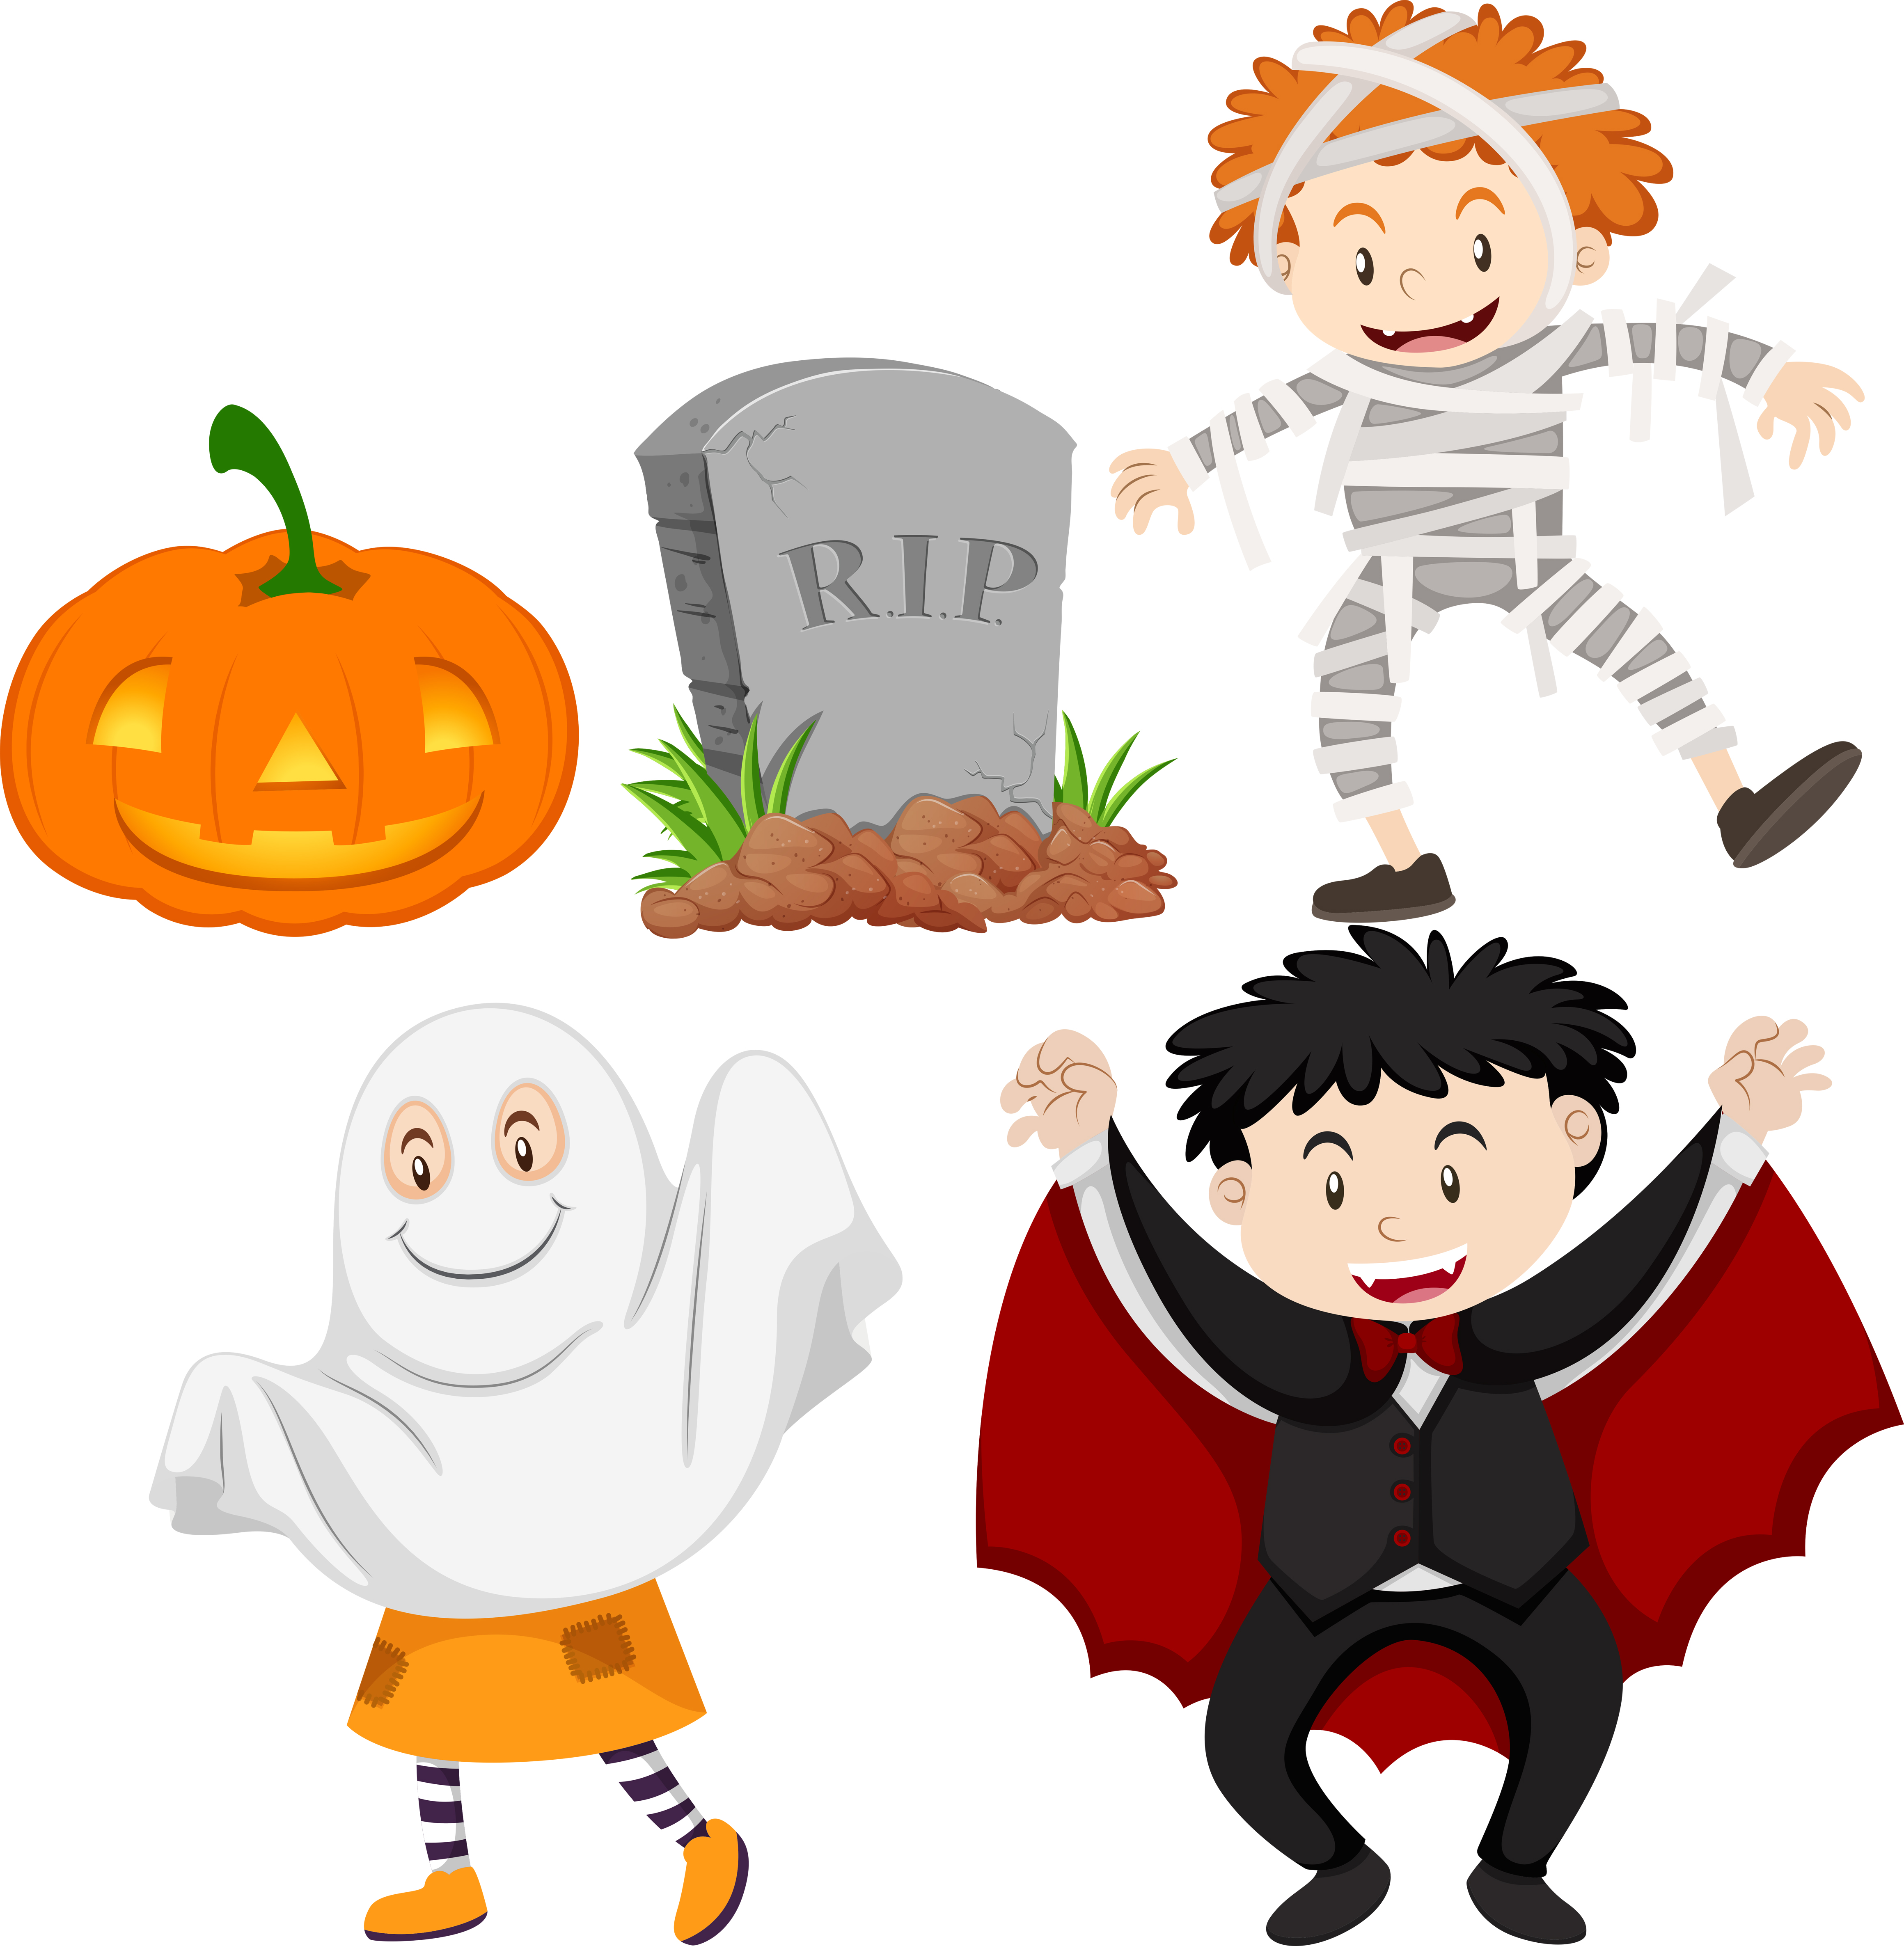 Kids in halloween costumes 430618 Vector Art at Vecteezy